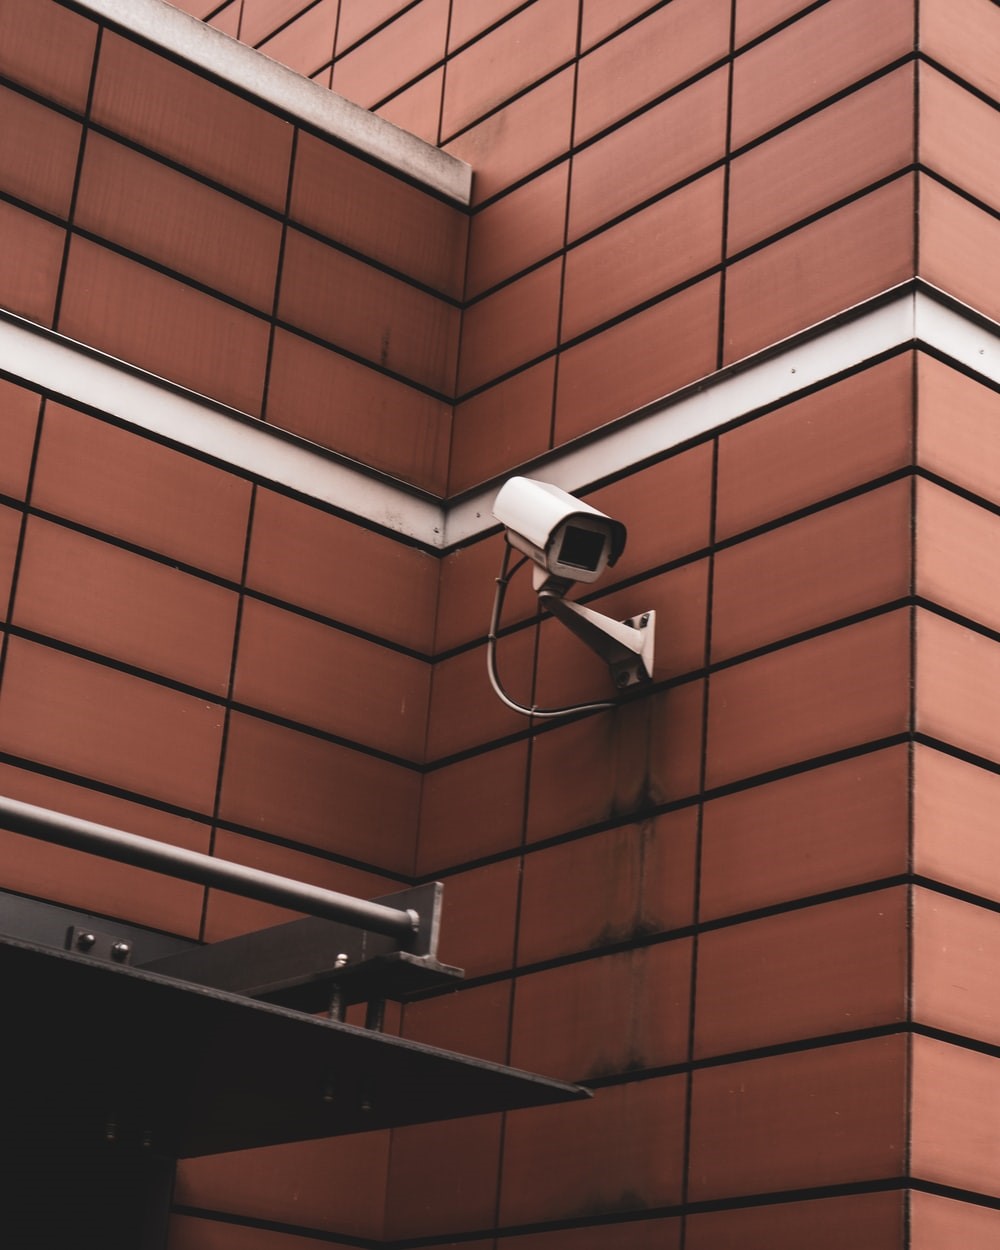 Surveillance camera inside a building